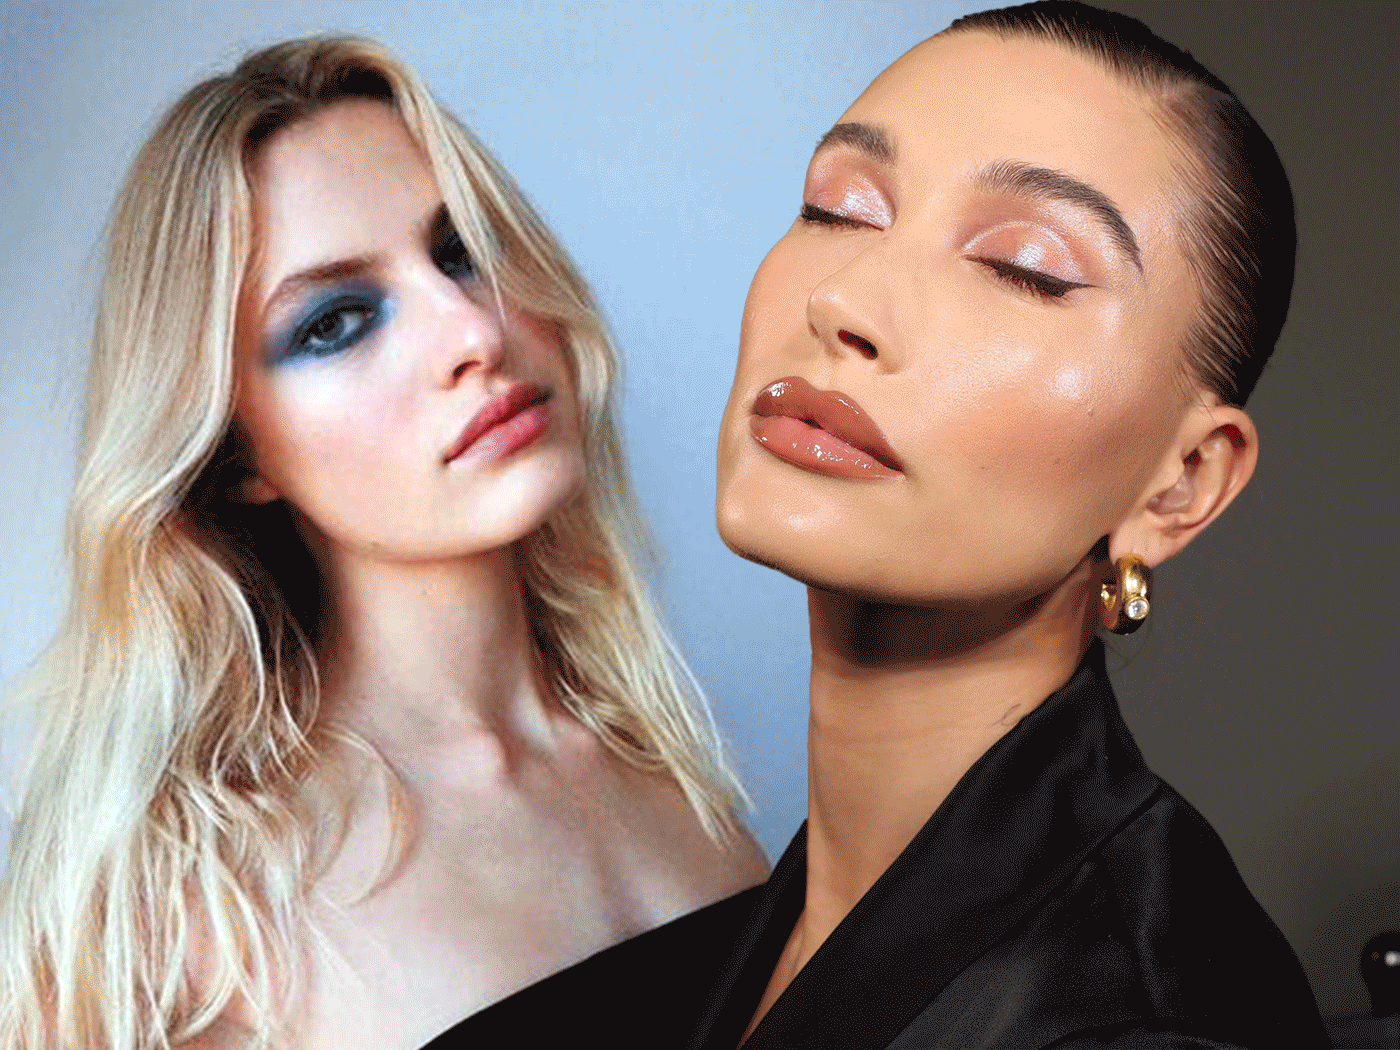 Παλέτες σκιών: 8 προϊόντα που θα χρειαστείς για να αντιγράψεις τα eye make up looks των celebrities